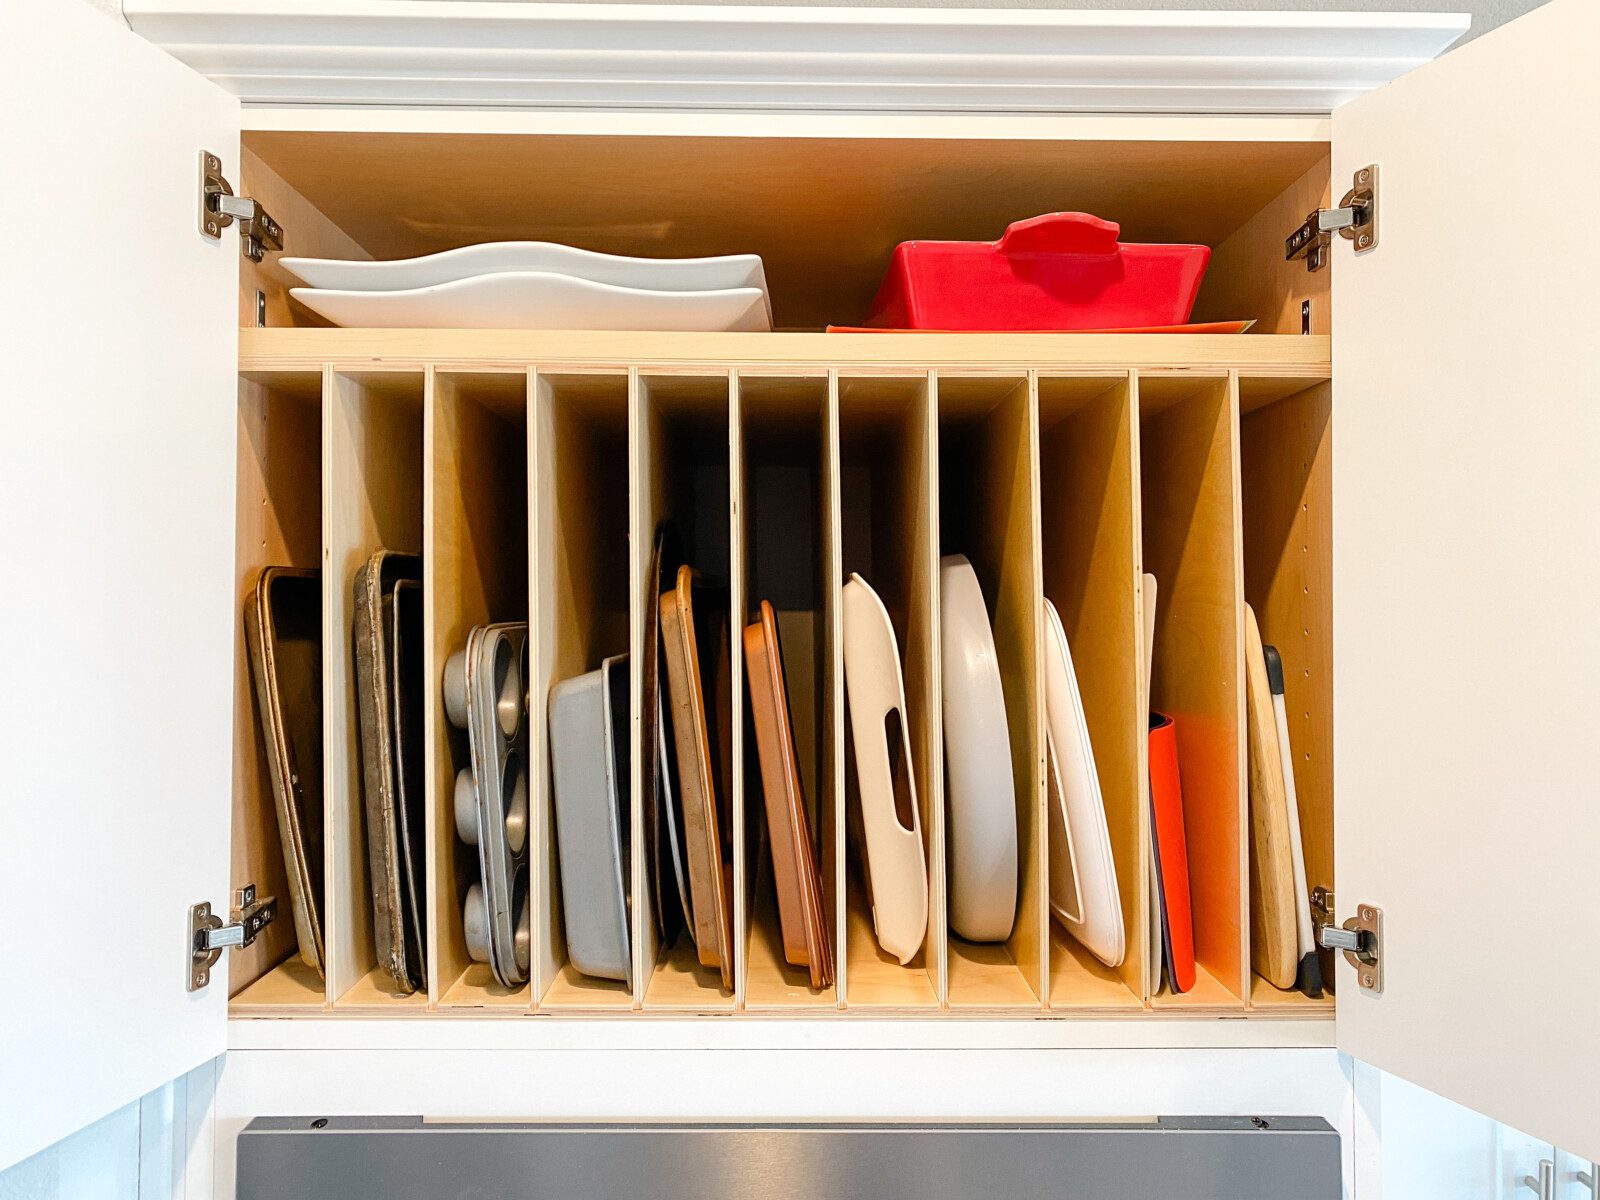 Kitchen Storage & Organization: Easy DIY Cabinet Dividers 